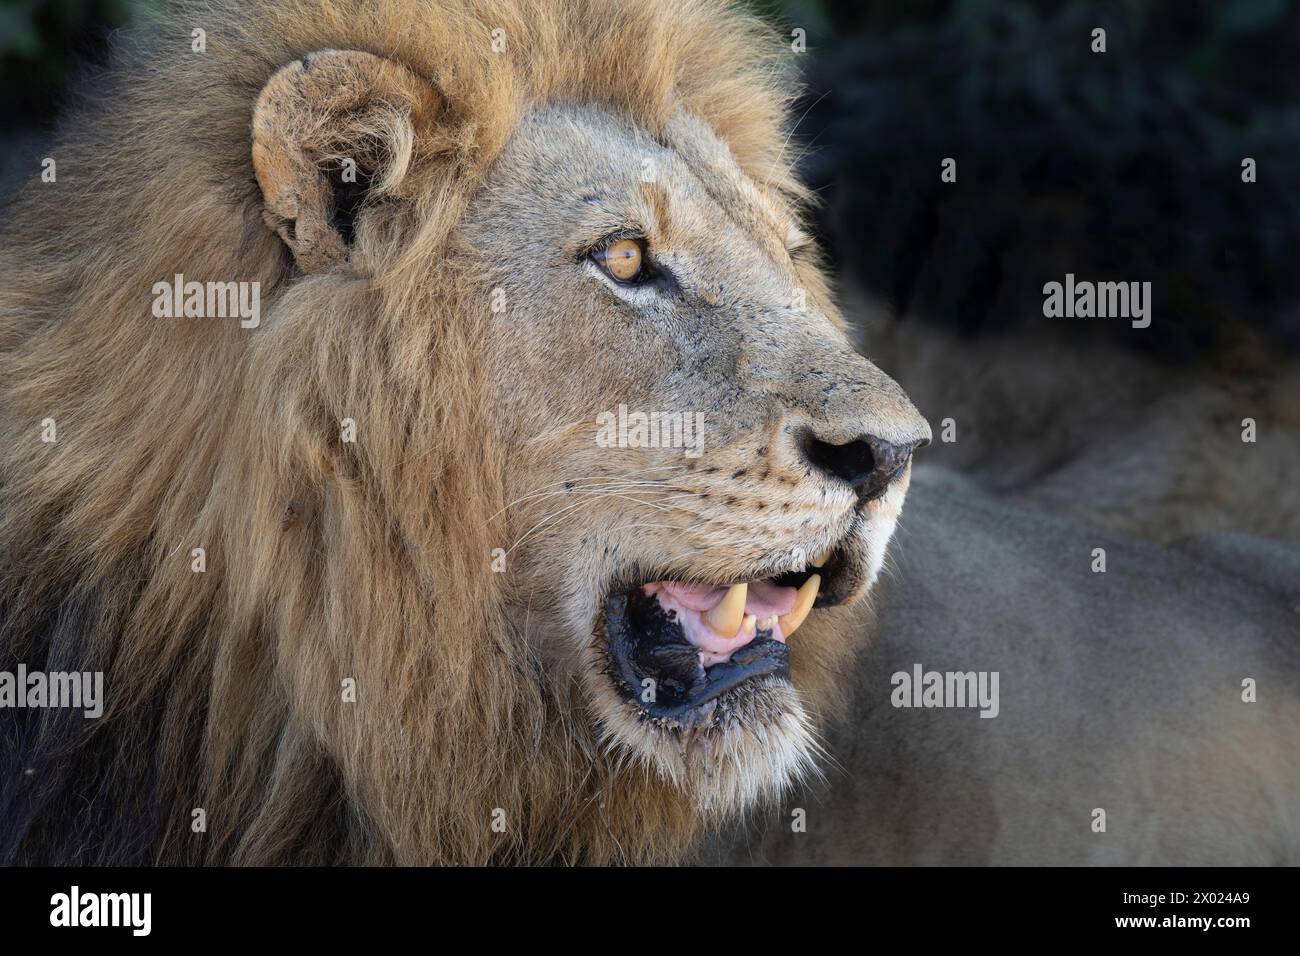 Lion (Panthera leo), MalaMala game reserve, South Africa Stock Photo